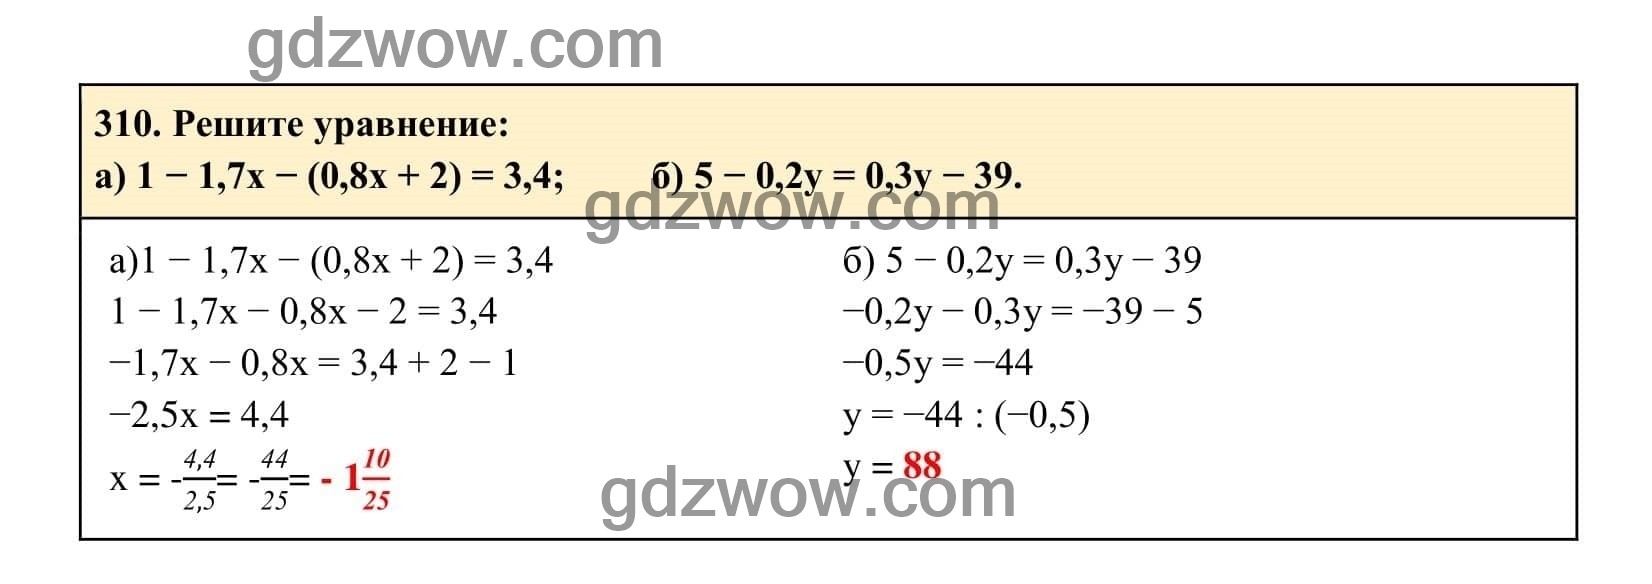 Упражнение 310 - ГДЗ по Алгебре 7 класс Учебник Макарычев (решебник) - GDZwow